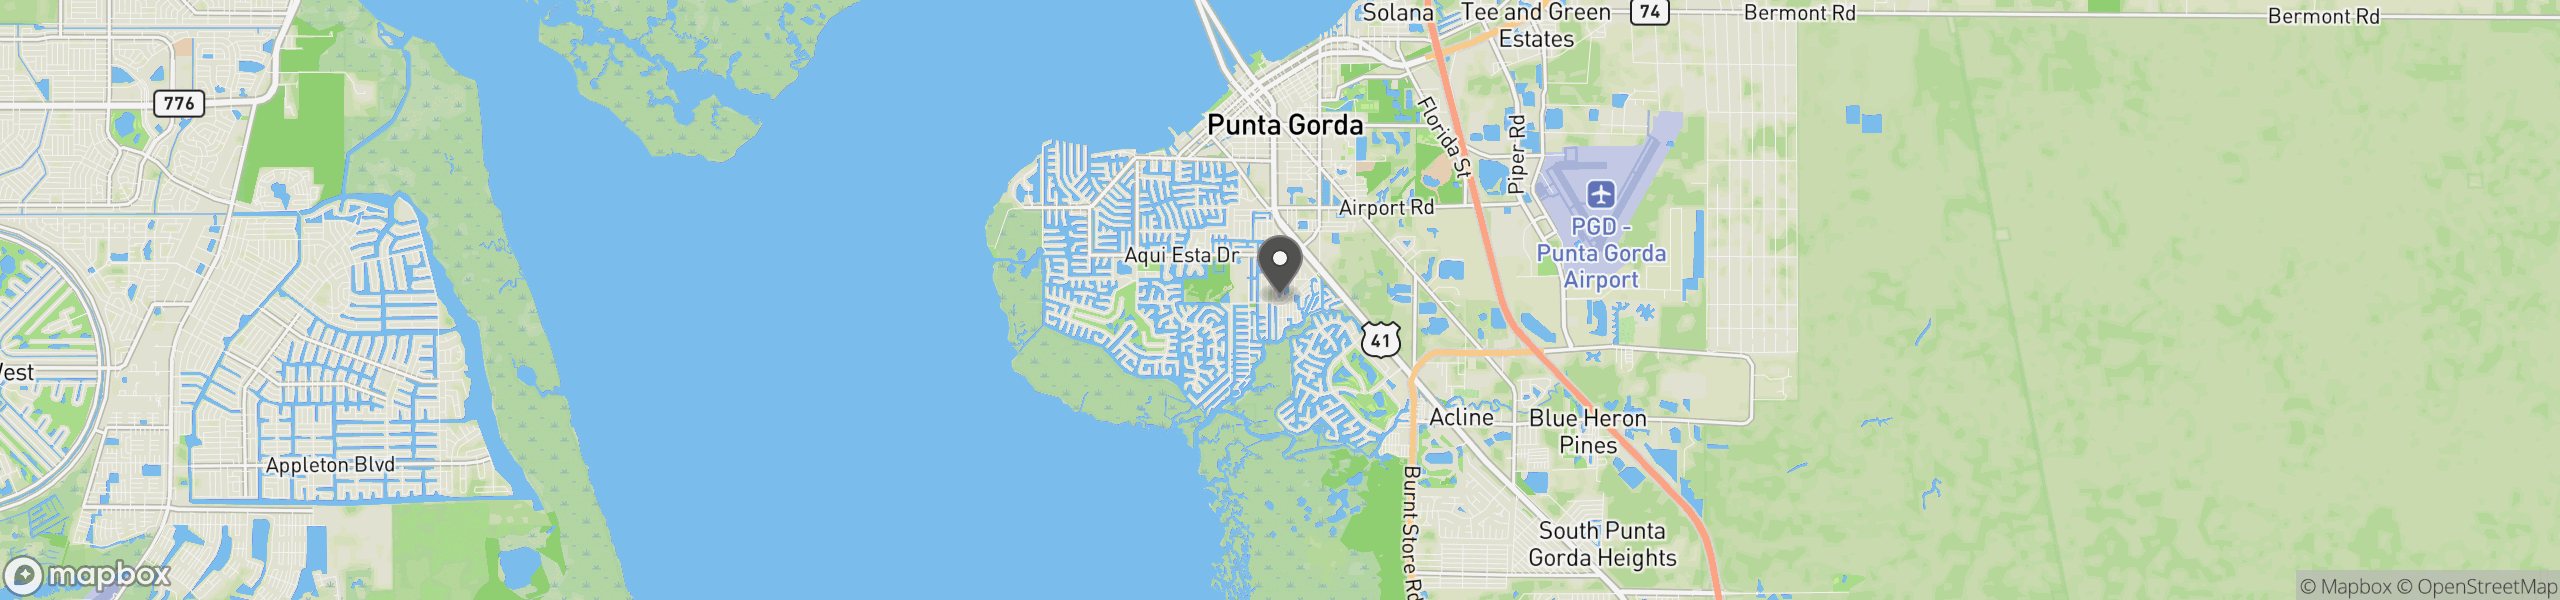 Punta Gorda, FL